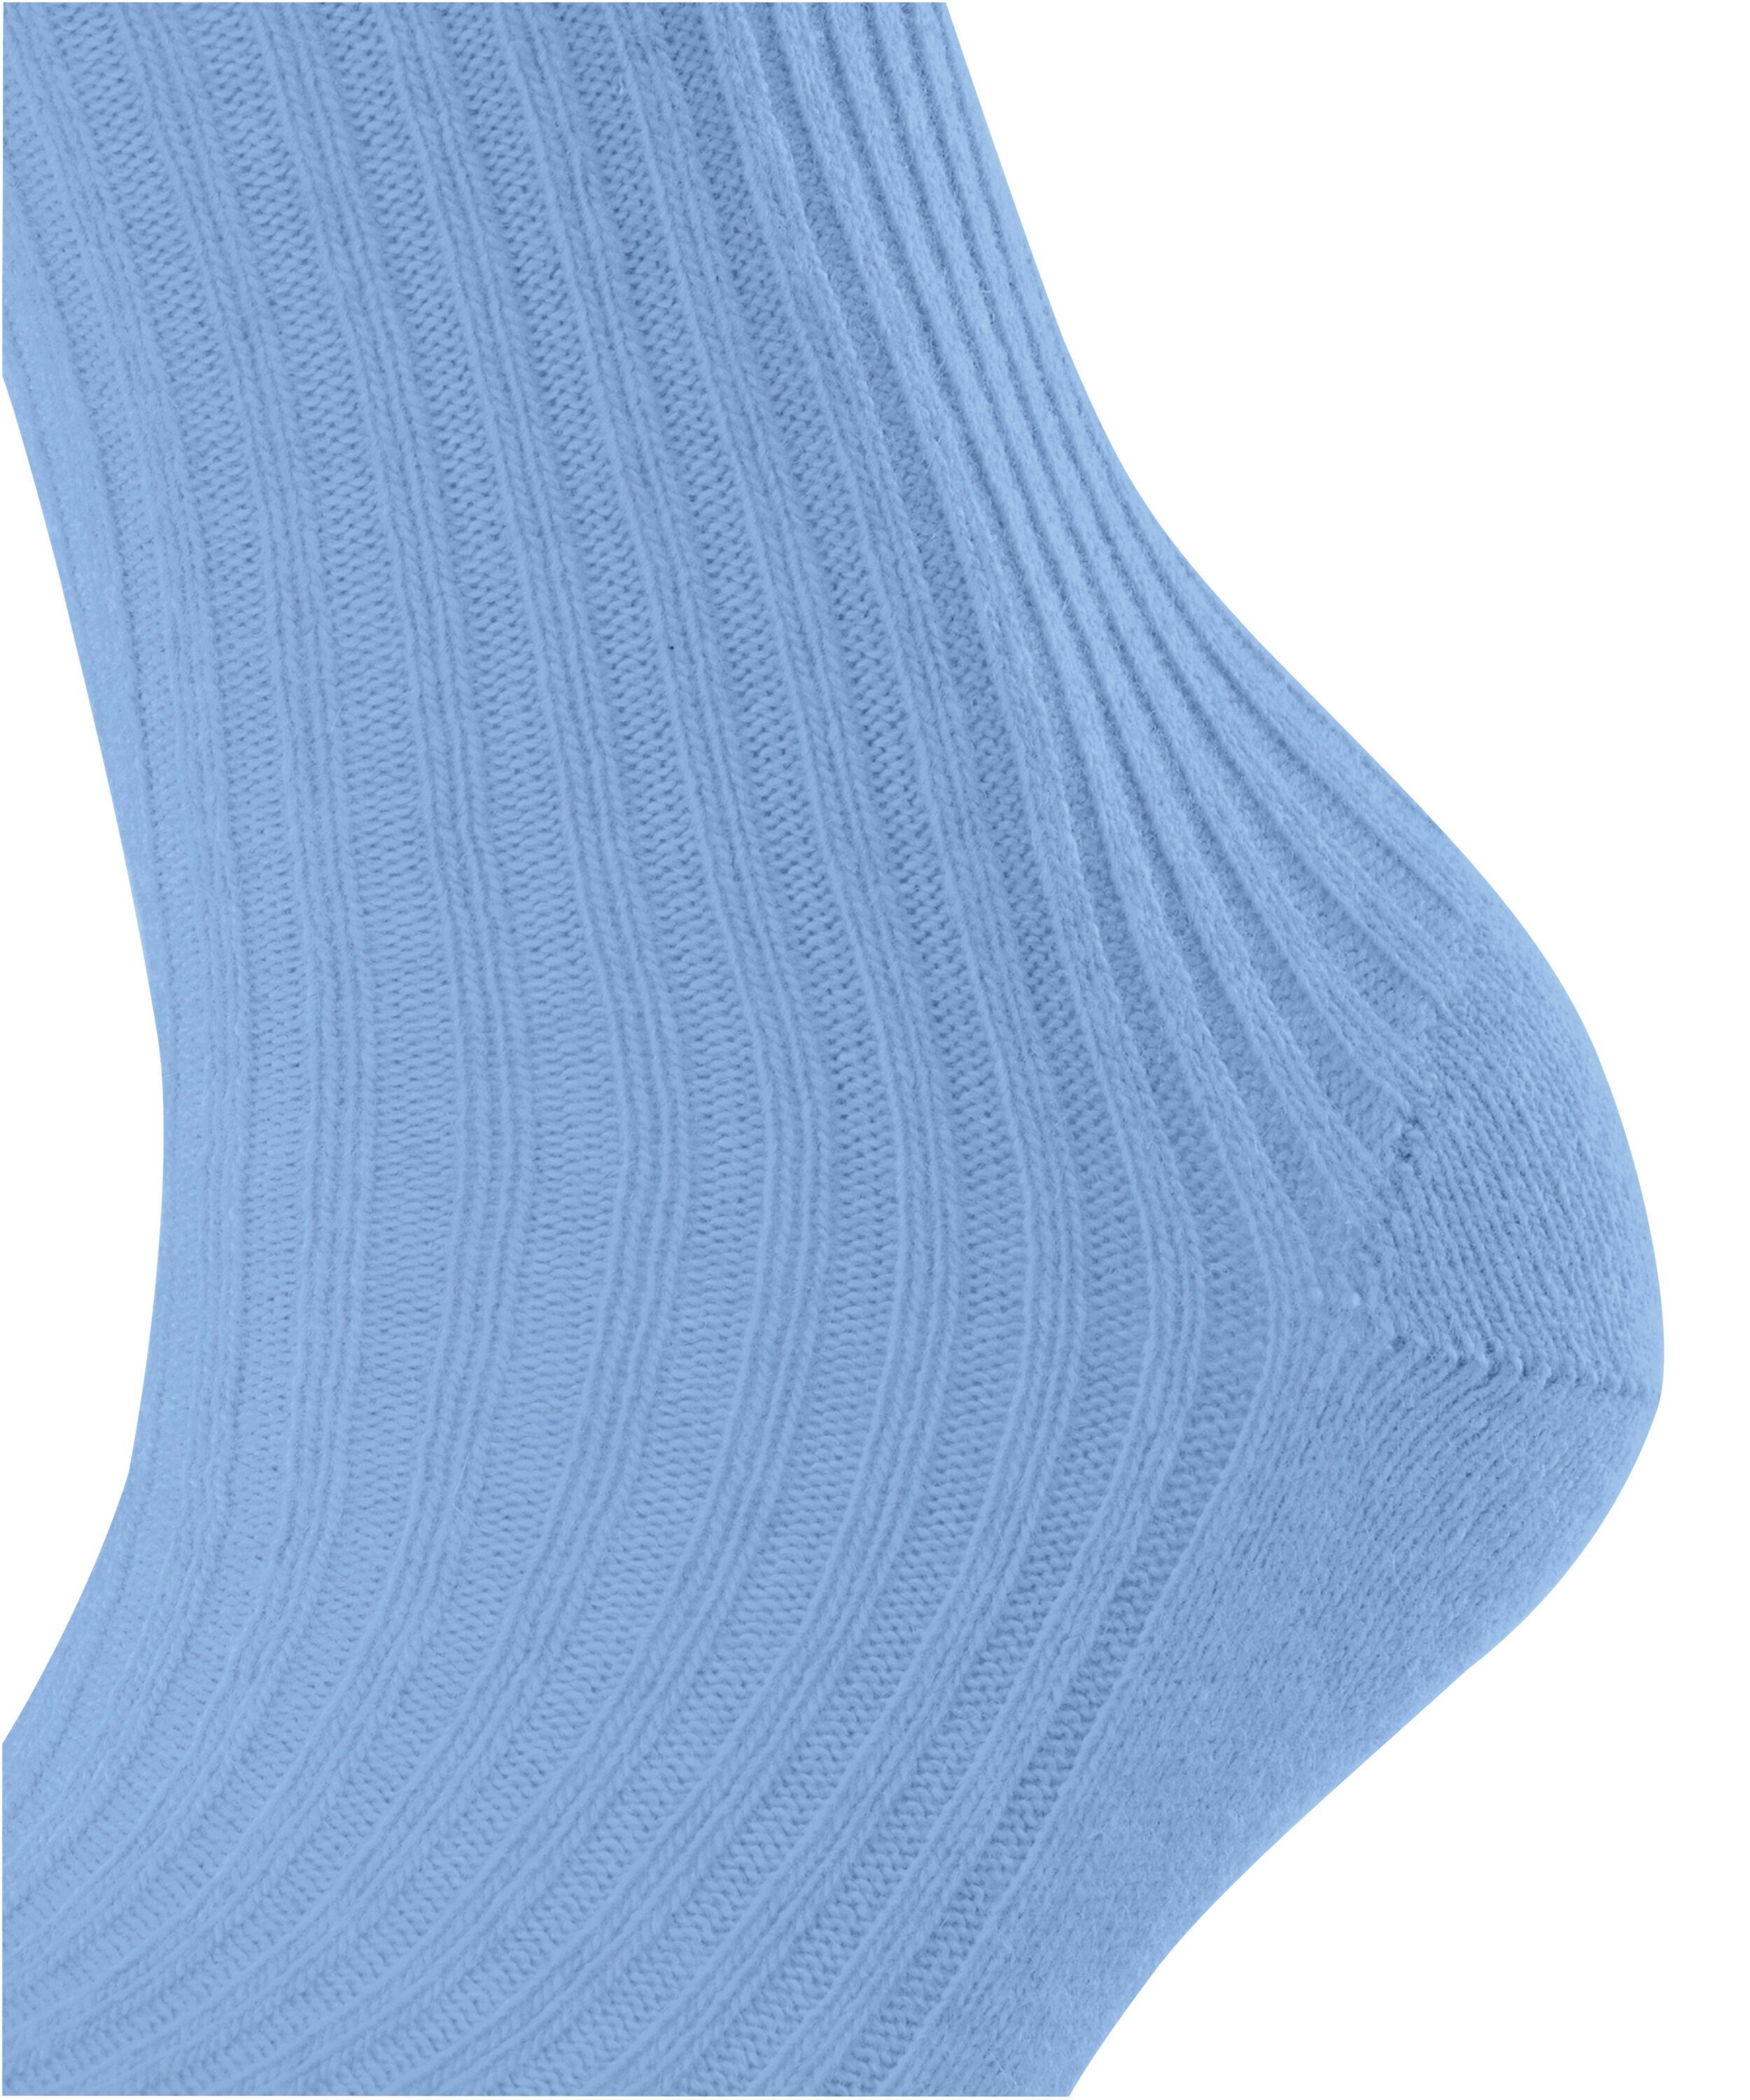 Cosy FALKE Wool arcticblue Socken Boot (1-Paar) (6367)